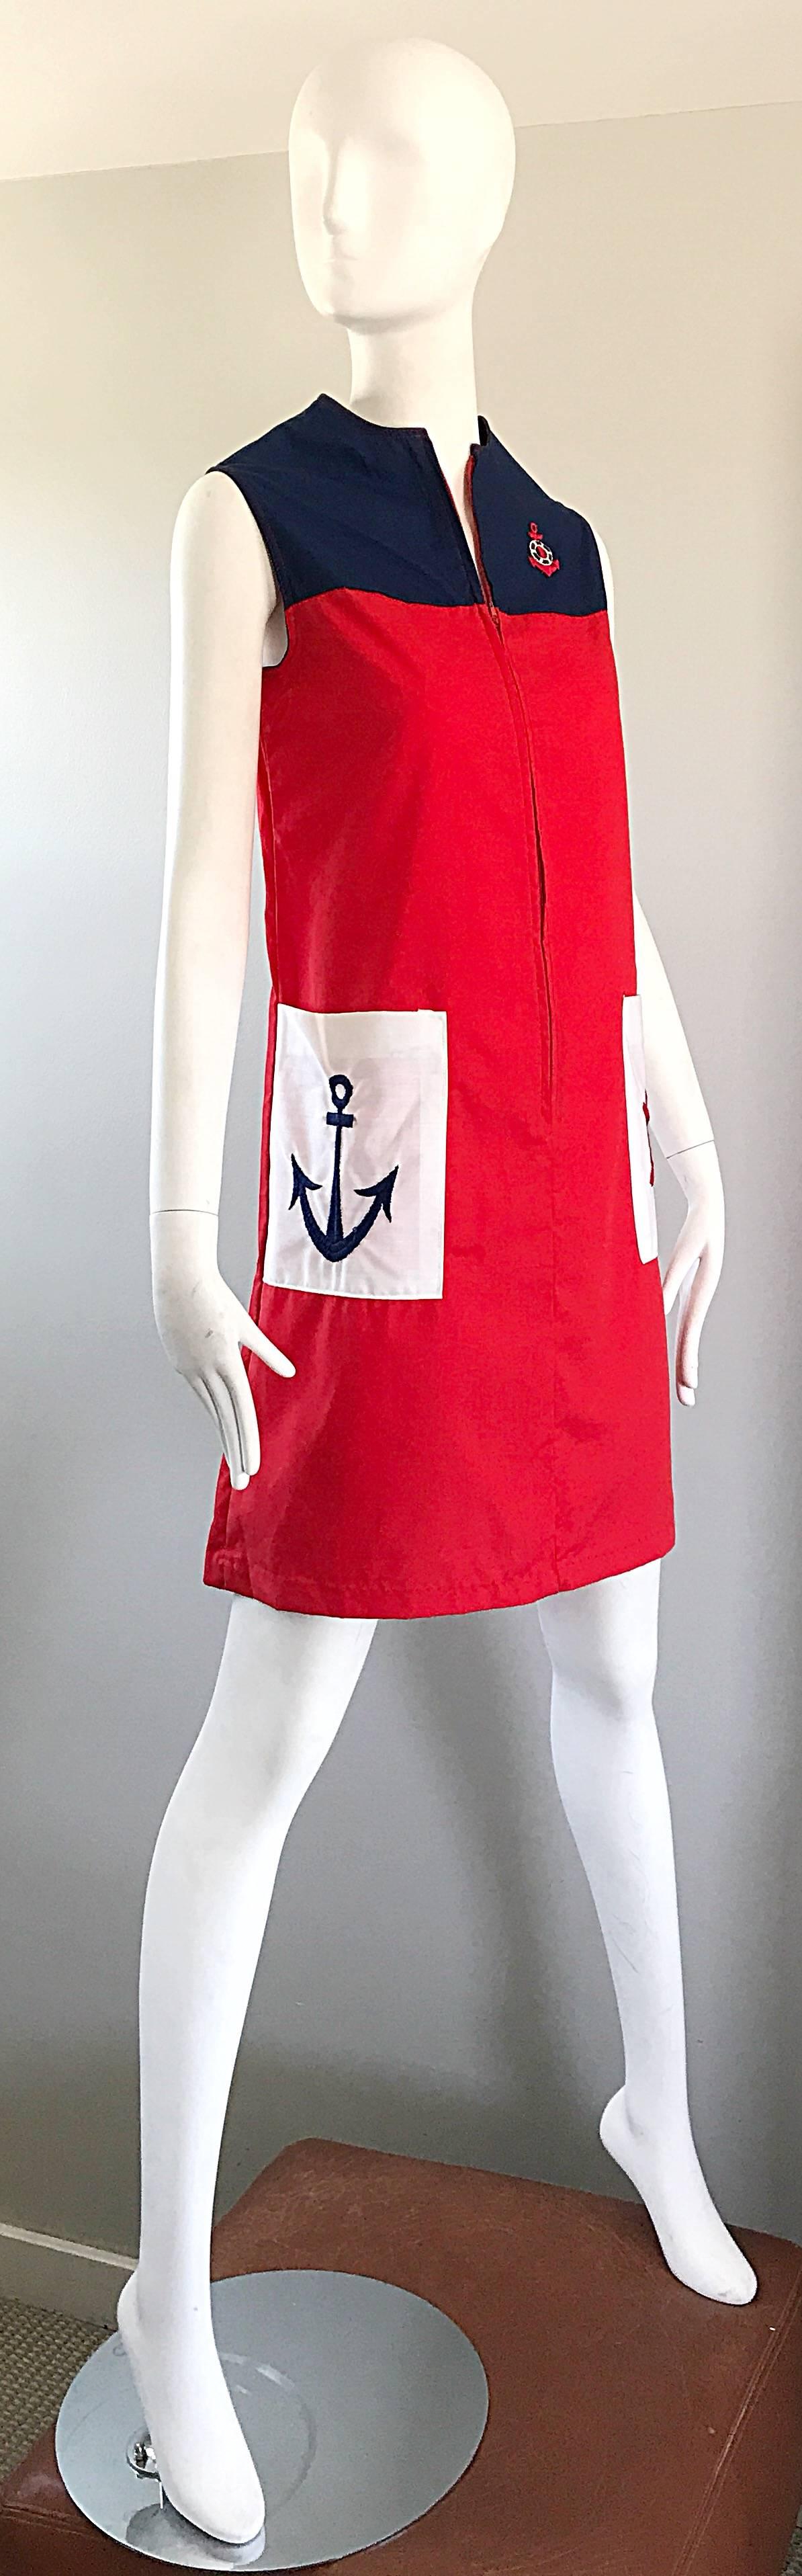 sailor red dress